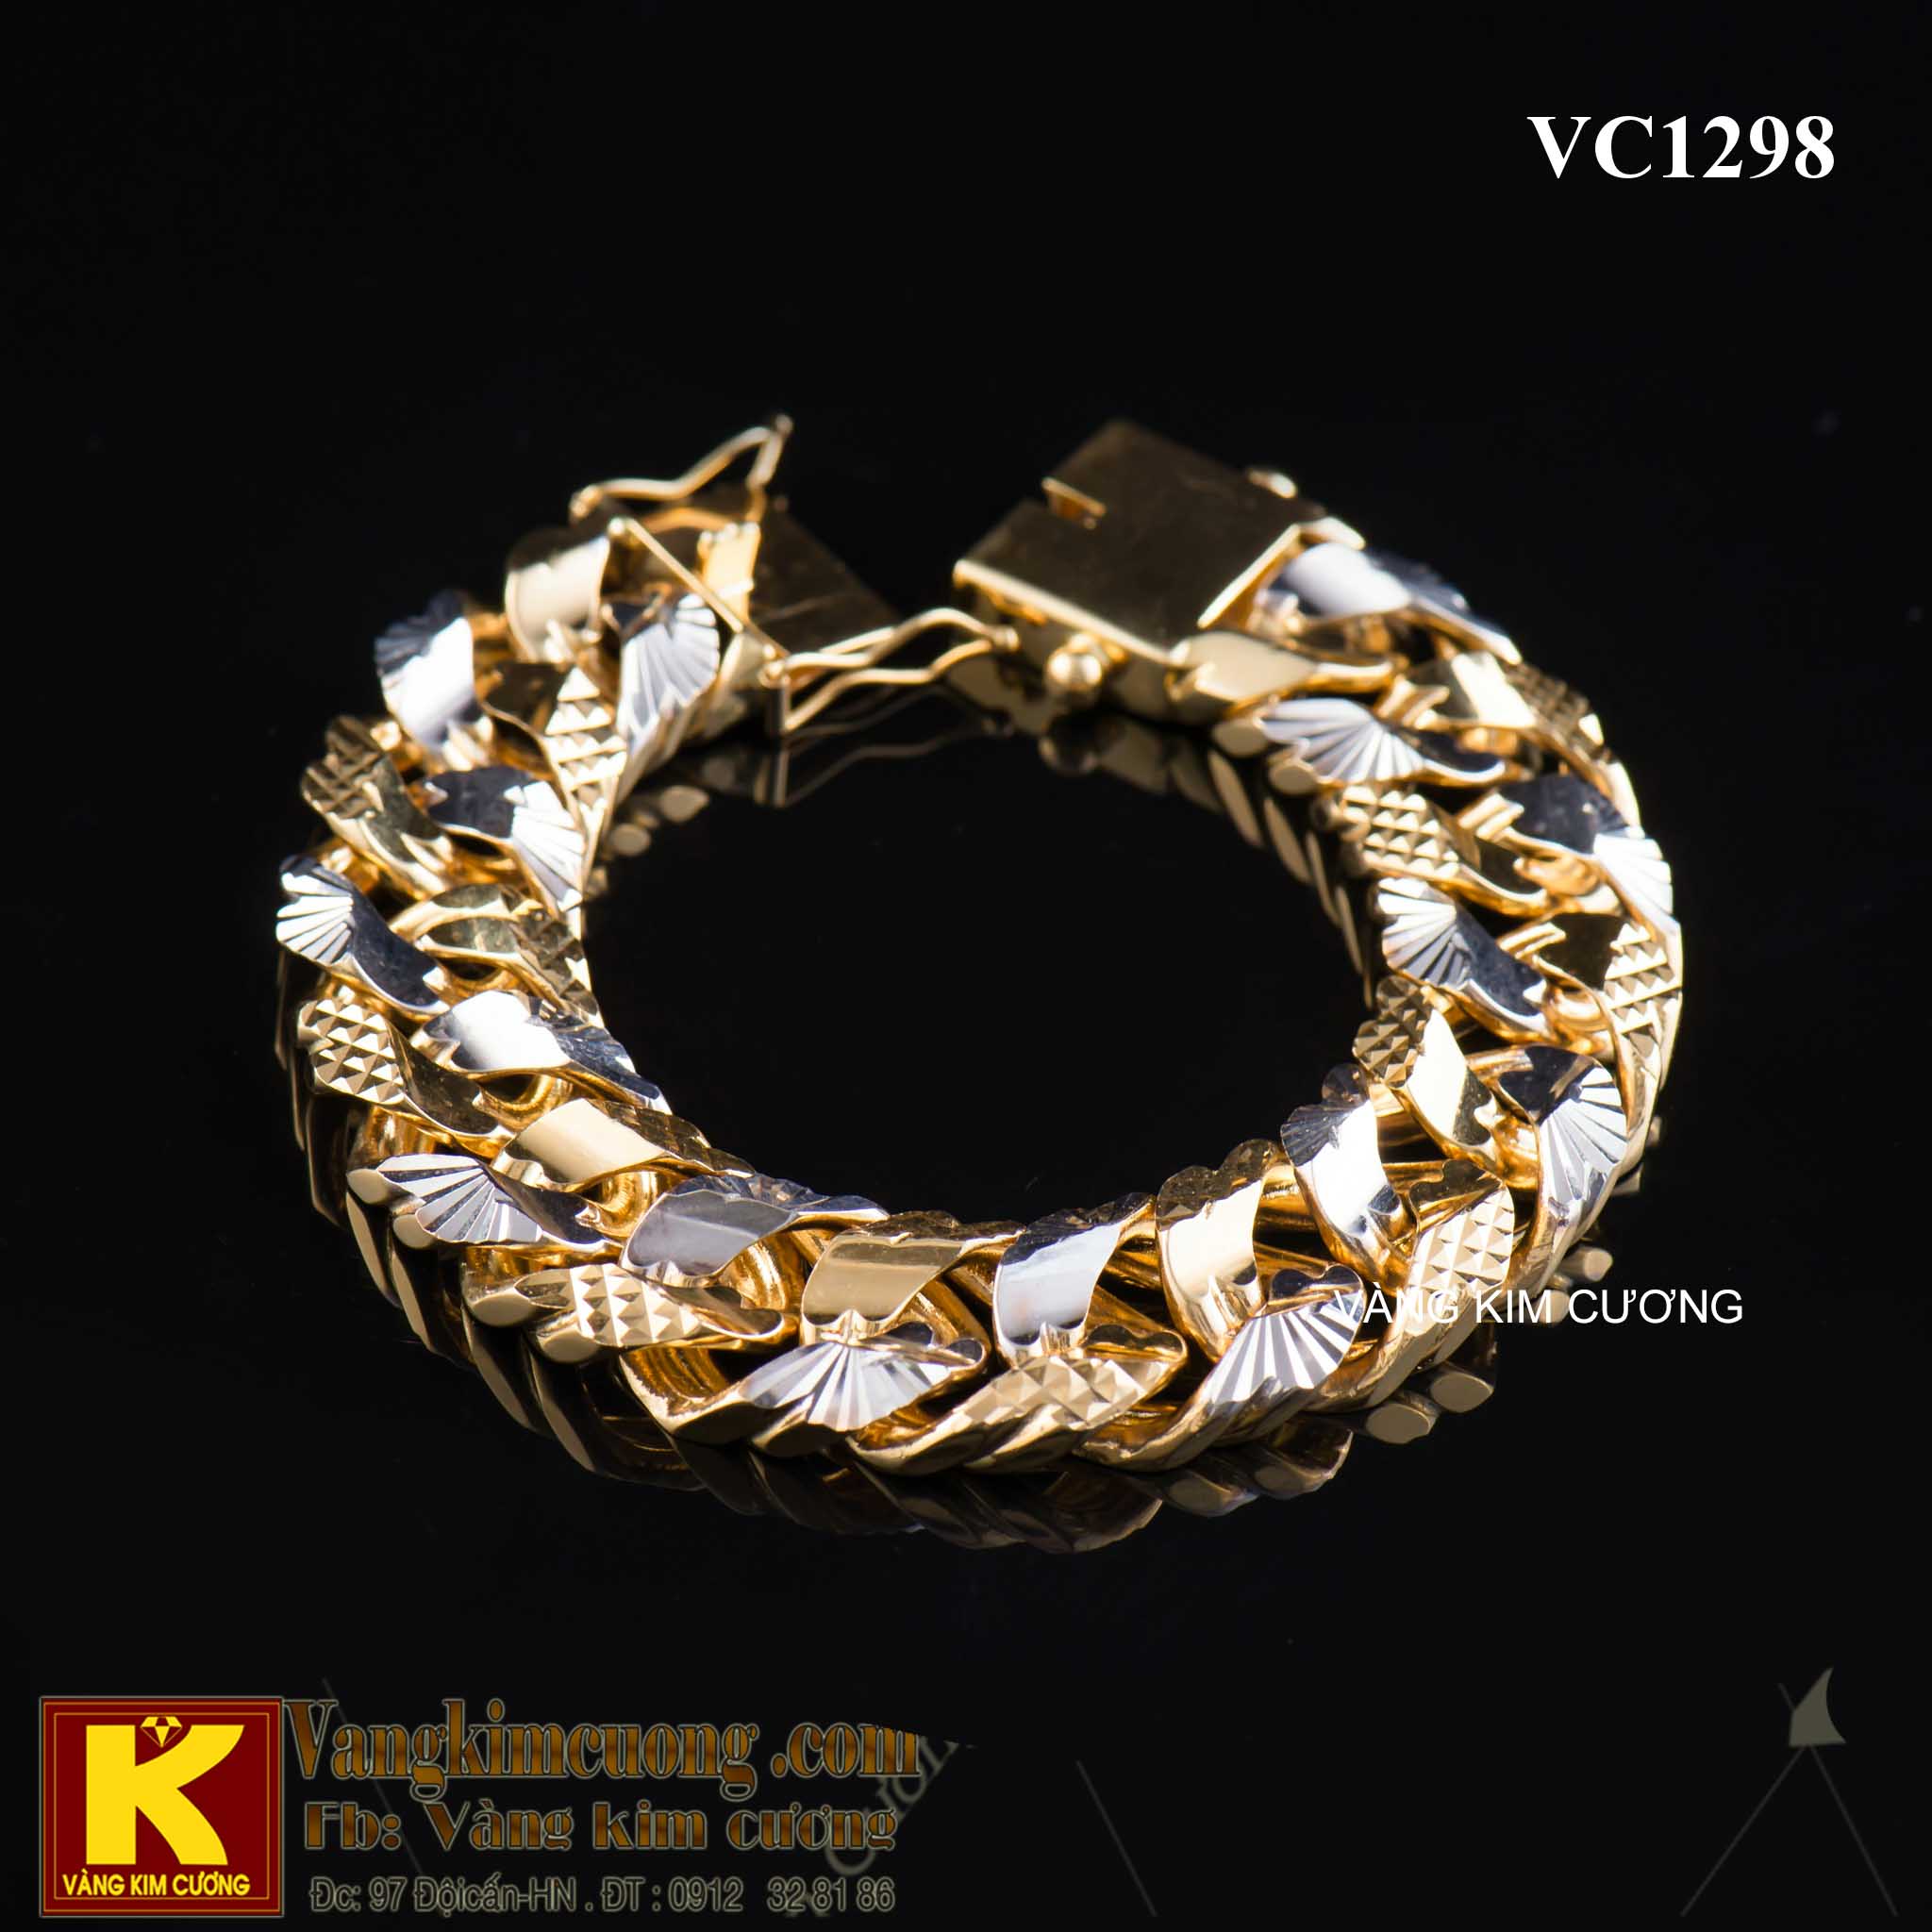 Với sự kết hợp hài hòa giữa kim cương và vàng 18k, chiếc lắc tay điểm xuyết bởi các họa tiết tinh xảo sẽ giúp hoàn thiện phong cách của các quý ông.